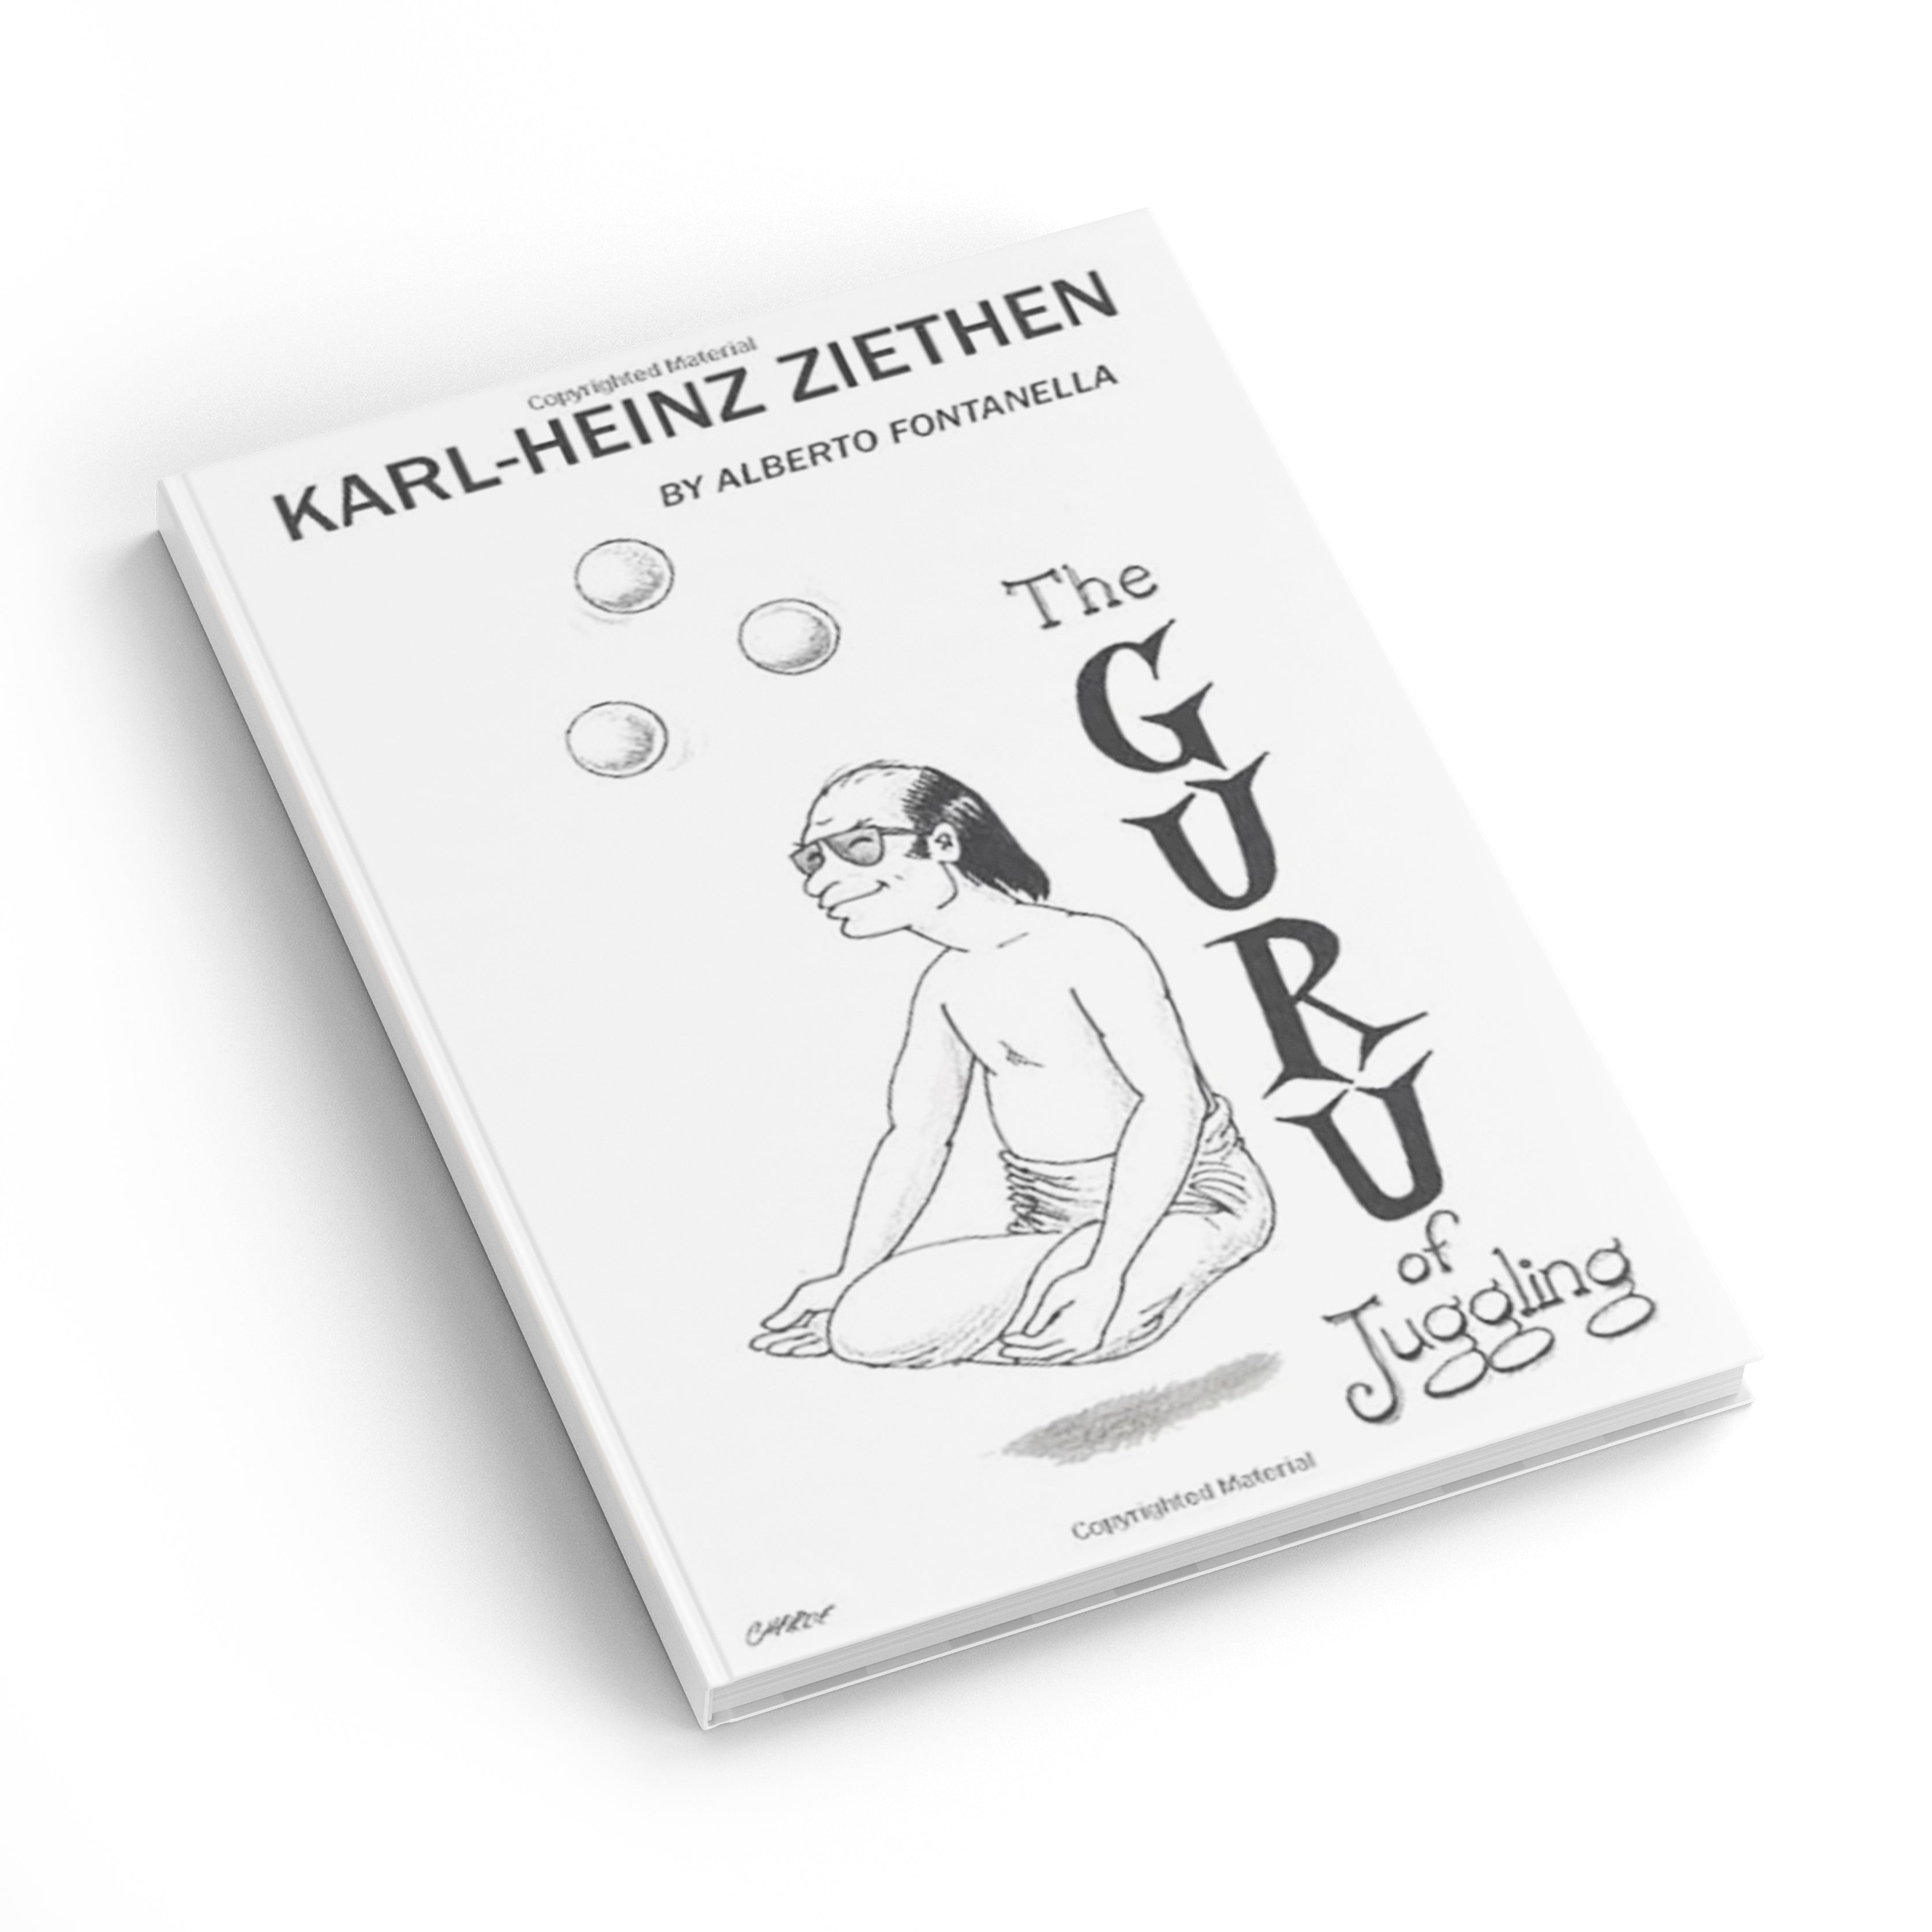 Karl-Heinz Ziethen, The Juggling Guru by: Alberto Fontanella